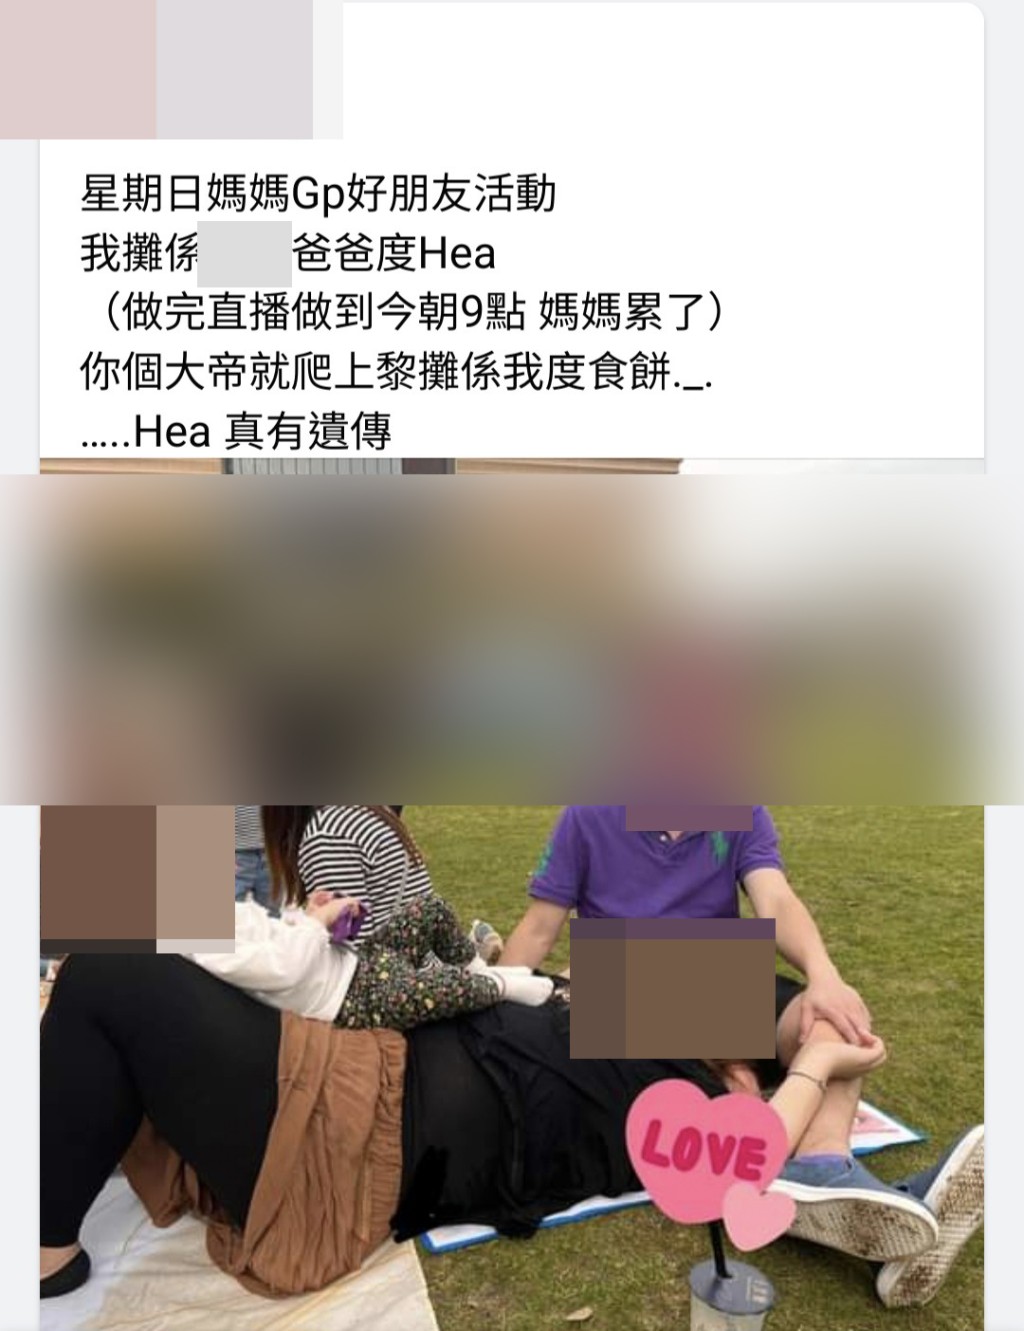 网民亦找到该港妈开设的FB专页，专页有不少港妈一家合照。